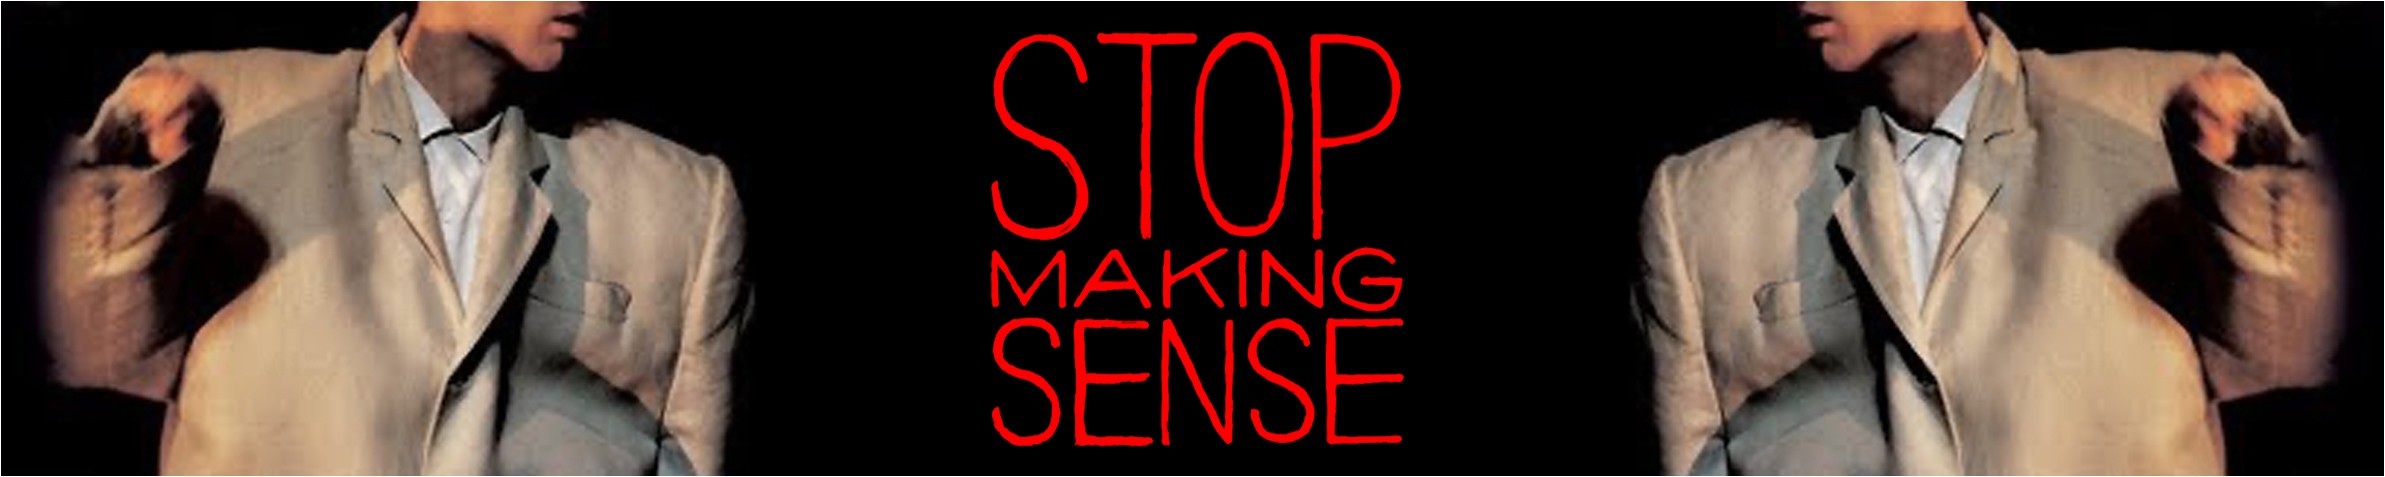 STOP MAKING SENSE!